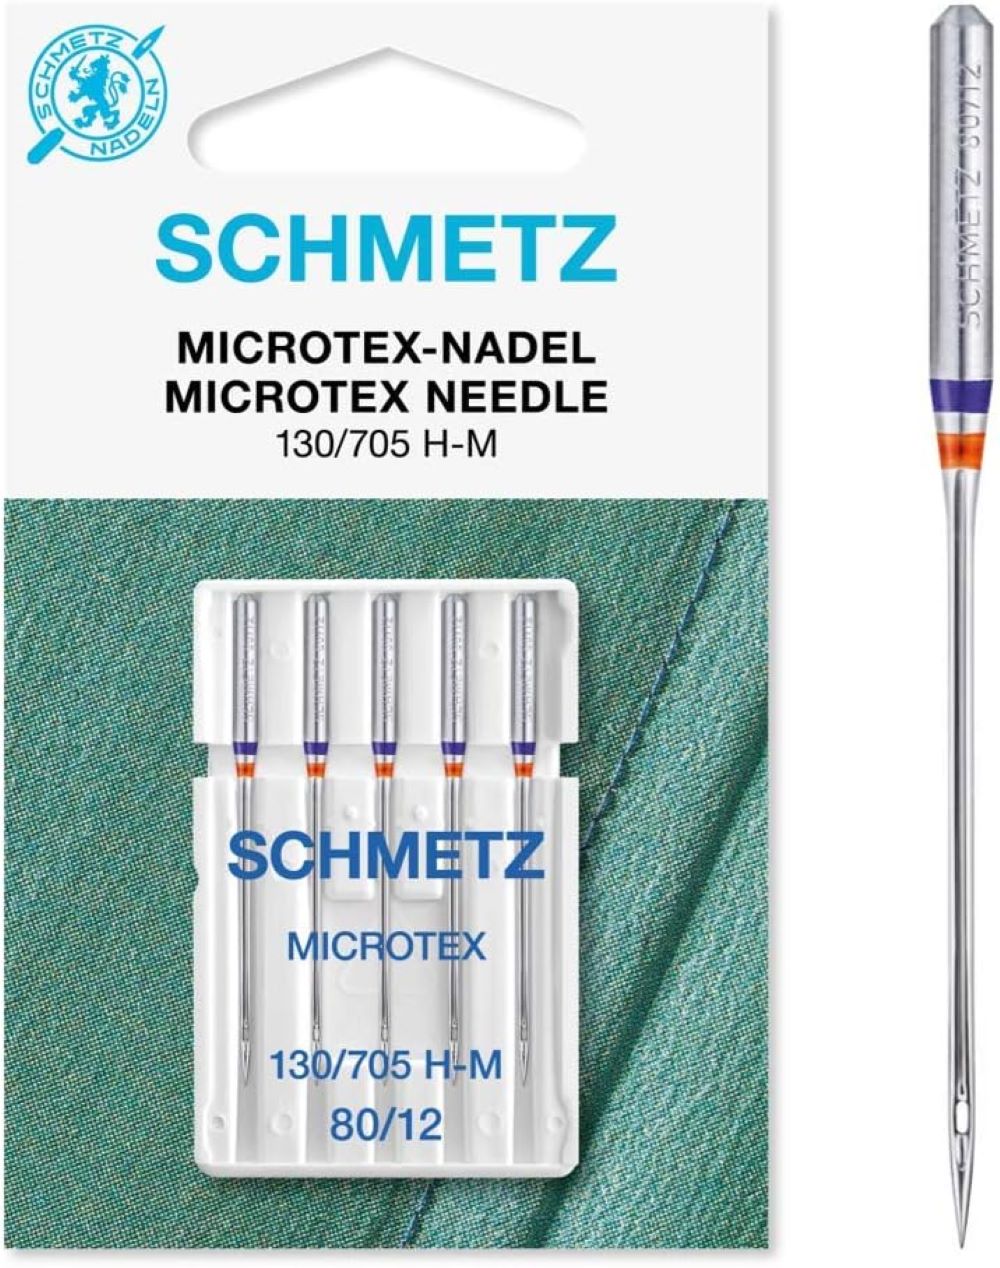 SCHMETZ | 5 Microtex-Nadeln | 130/705 H-M | Nadeldicke 80/12 | auf allen gängigen